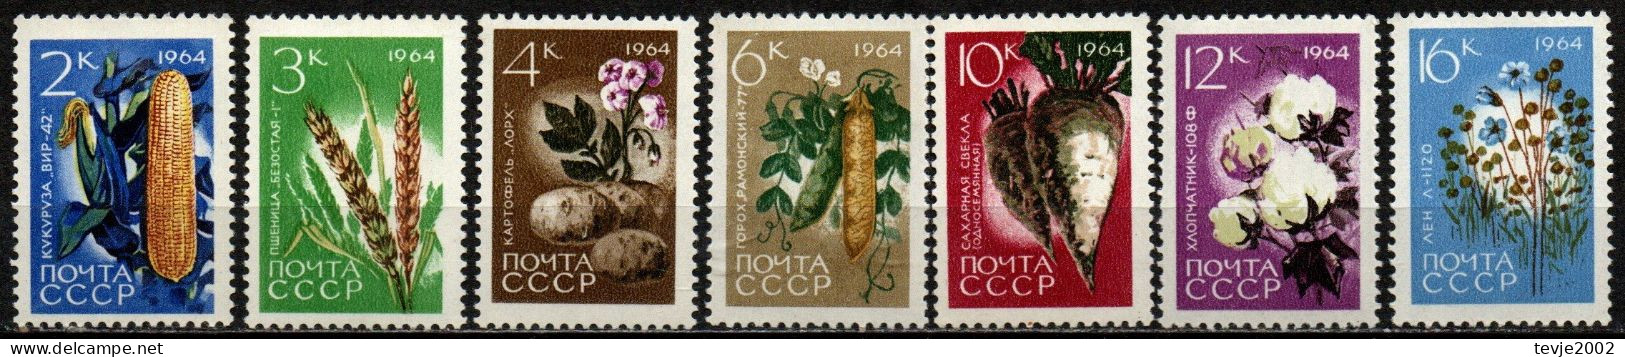 Sowjetunion UdSSR CCCP 1964 - Mi.Nr. 2922 - 2928 A - Postfrisch MNH - Gemüse Vegetables - Gemüse